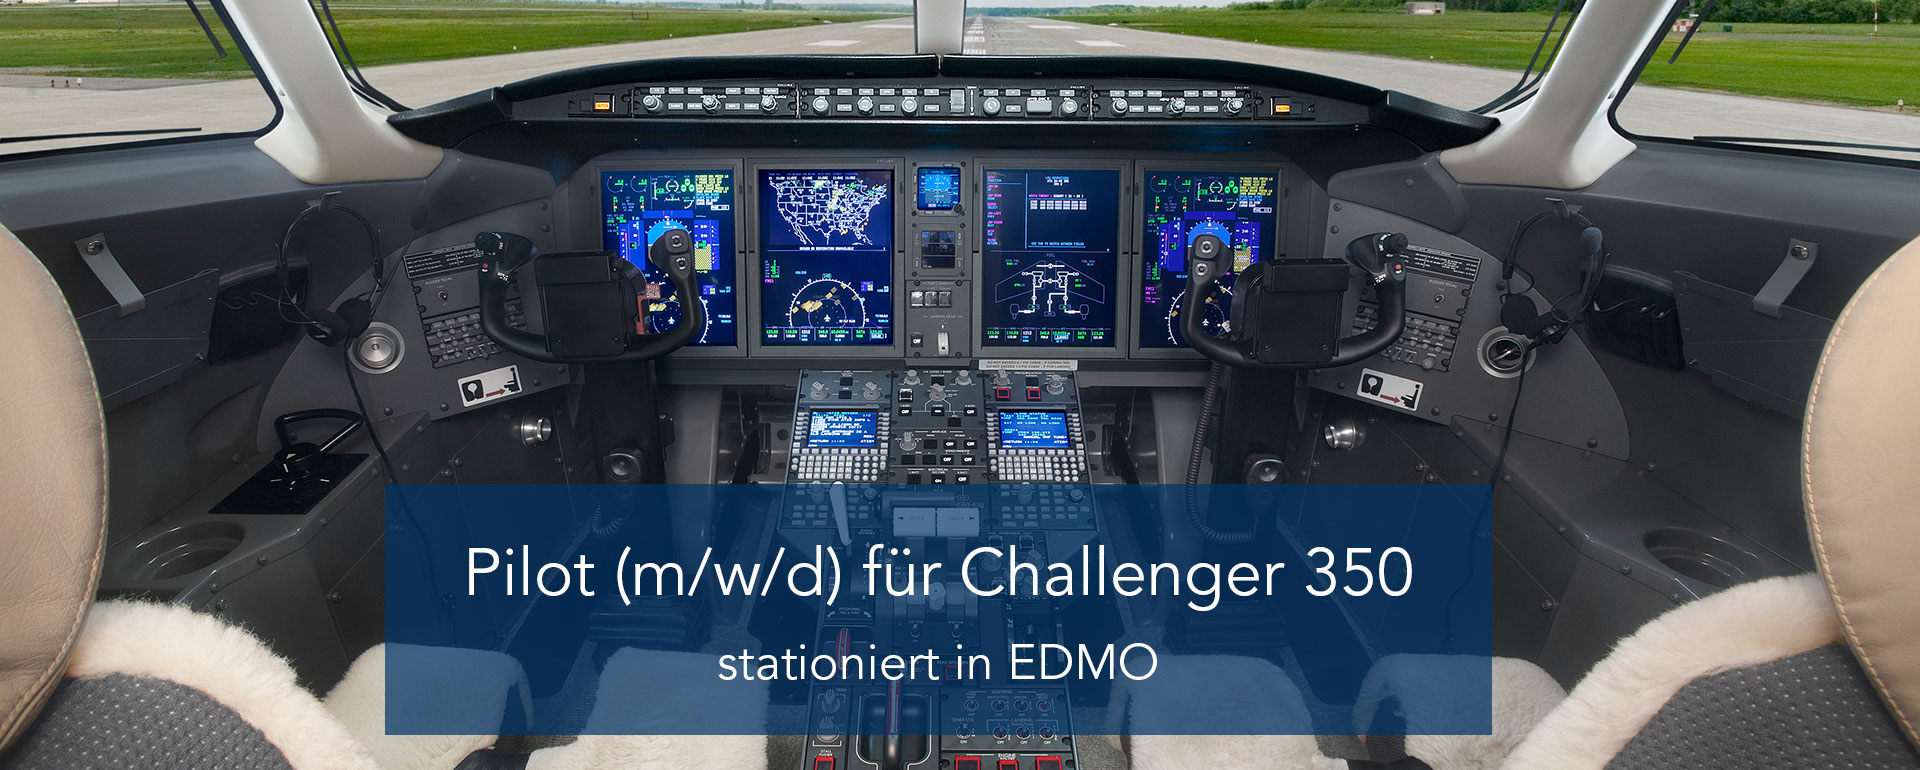 Pilot (m/w/d) für Challenger 350 | stationiert in EDMO